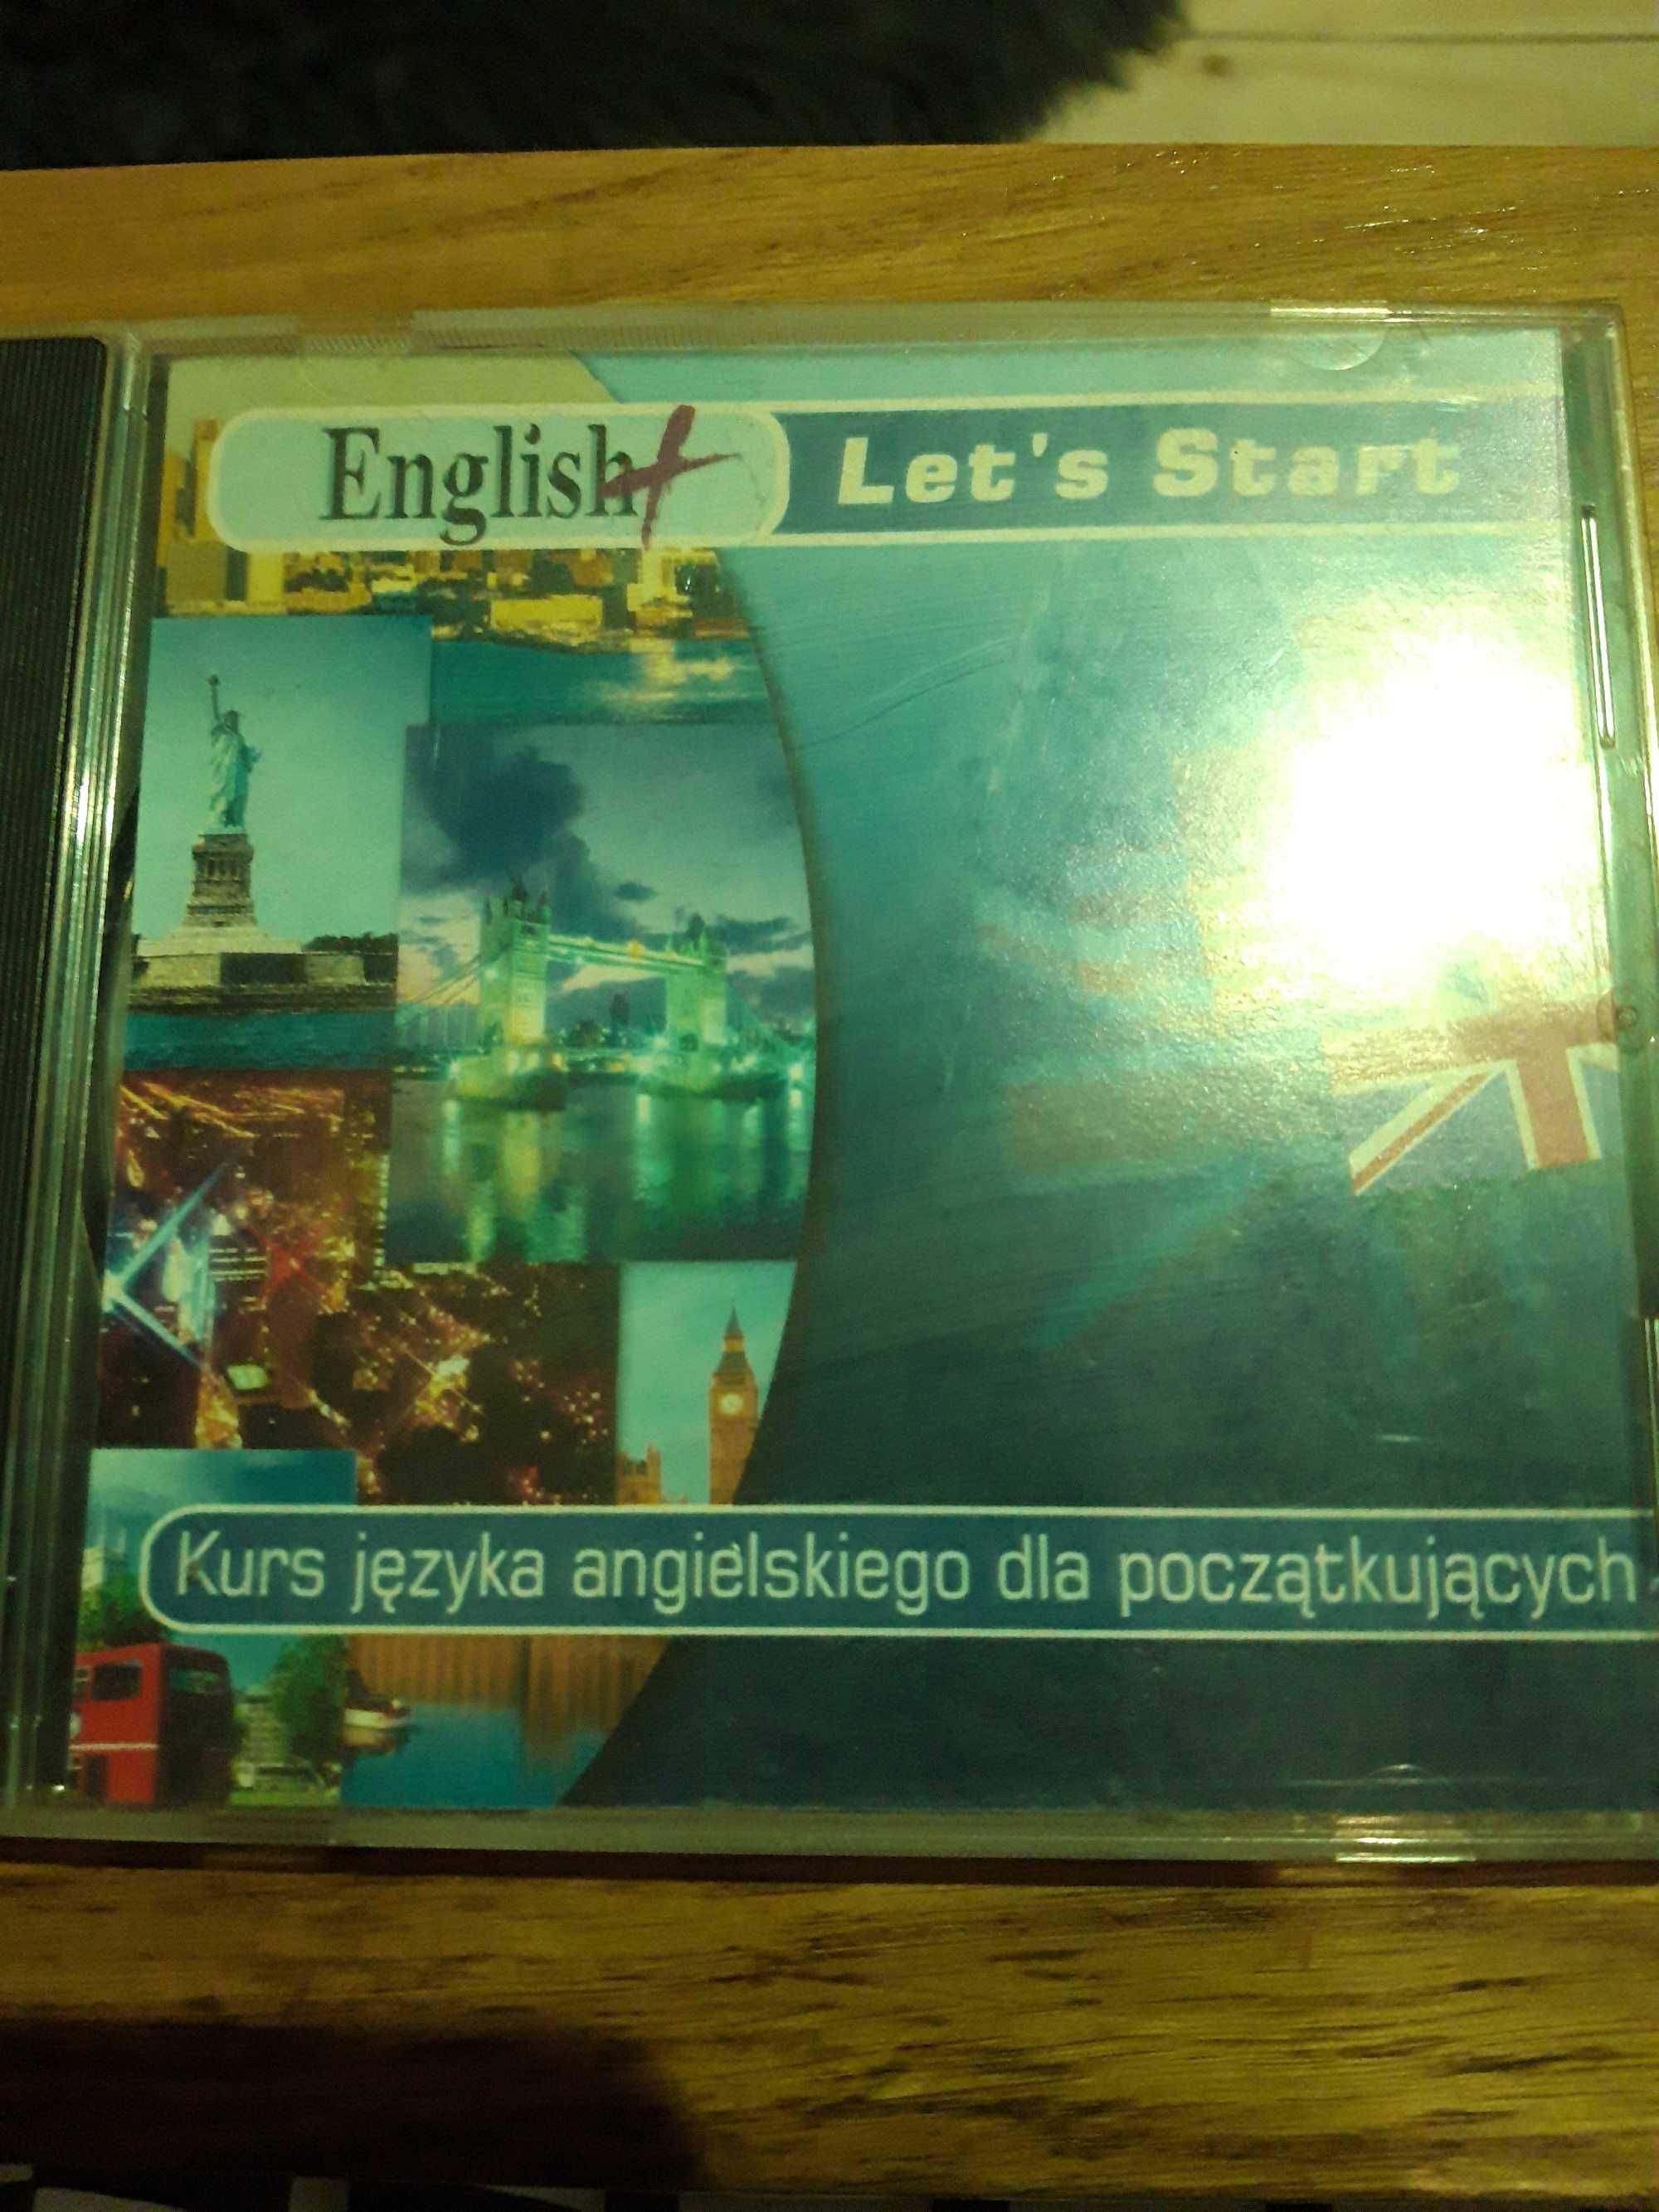 Kurs jezyka angielskiego na cd